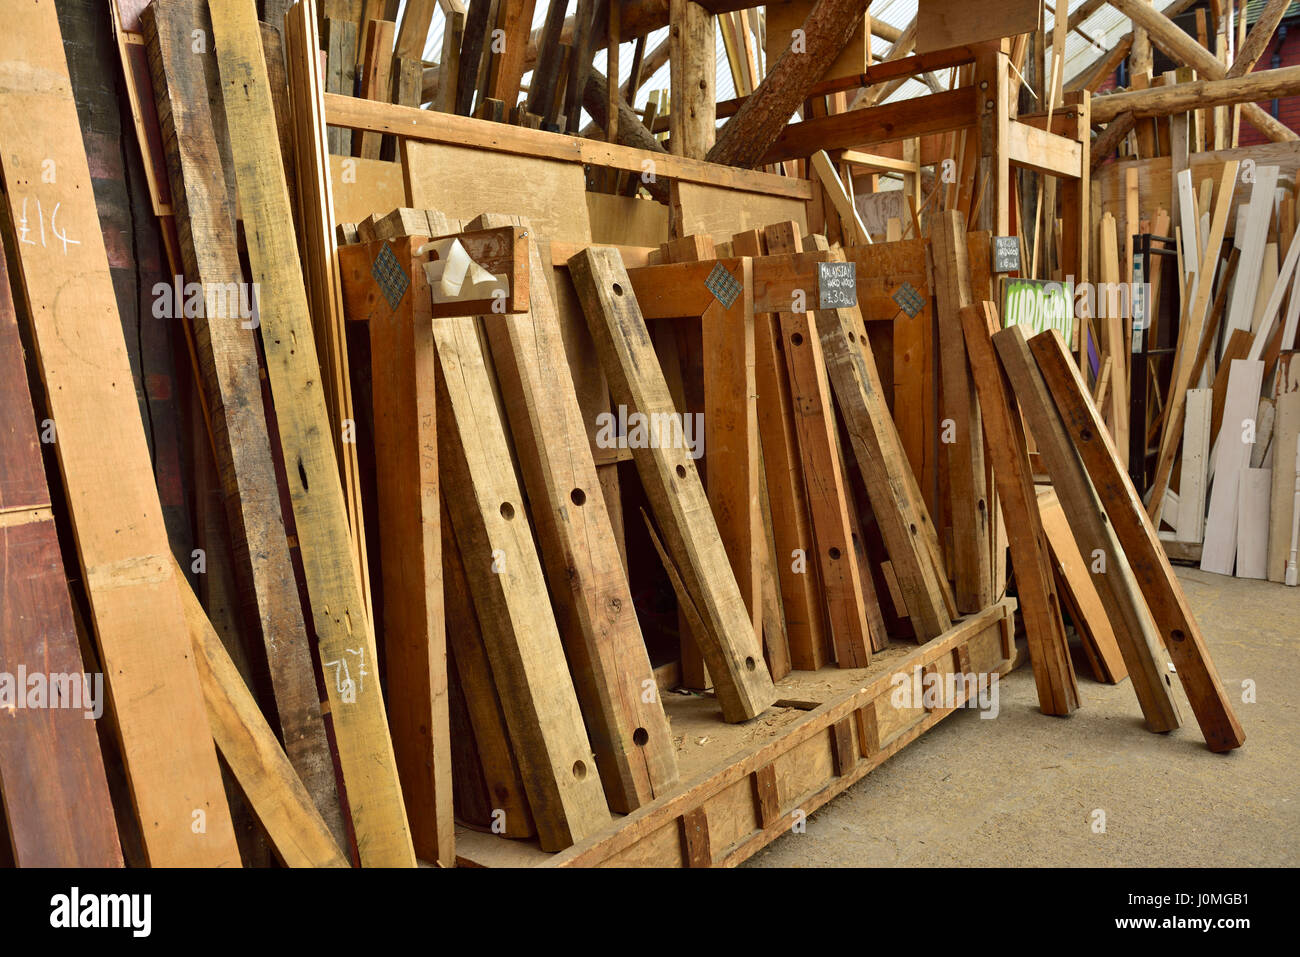 Viejos apilados de madera usados para su reventa y reutilización reciclado Foto de stock